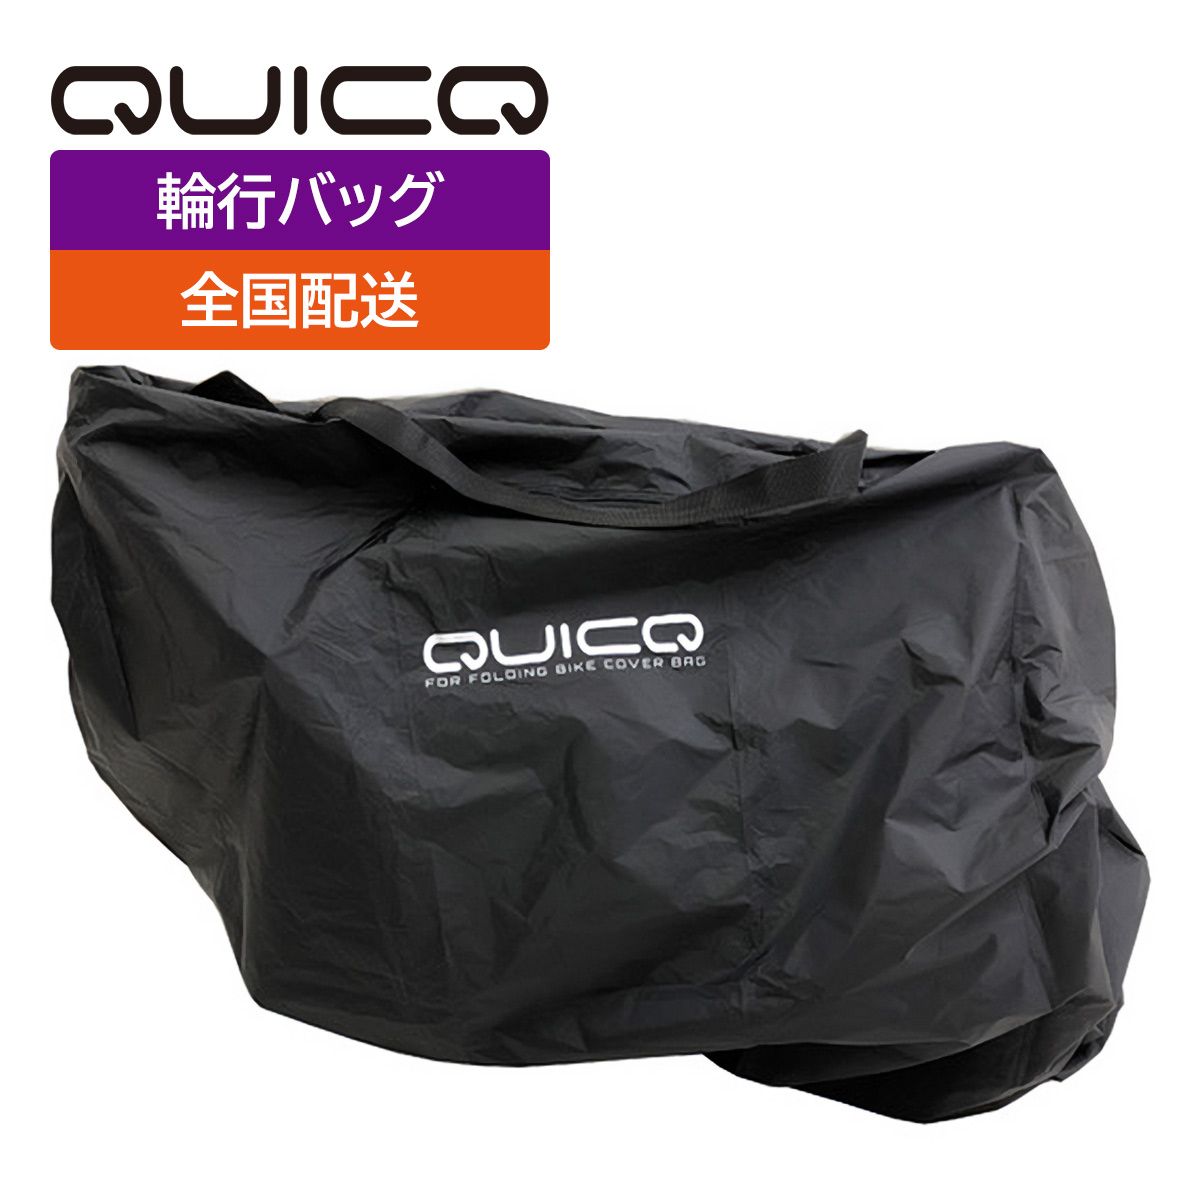 輪行バッグ QUICQ（クイック）16〜20インチ折りたたみ自転車に対応 フォールディングバイク カバーバッグ GS-CB-001